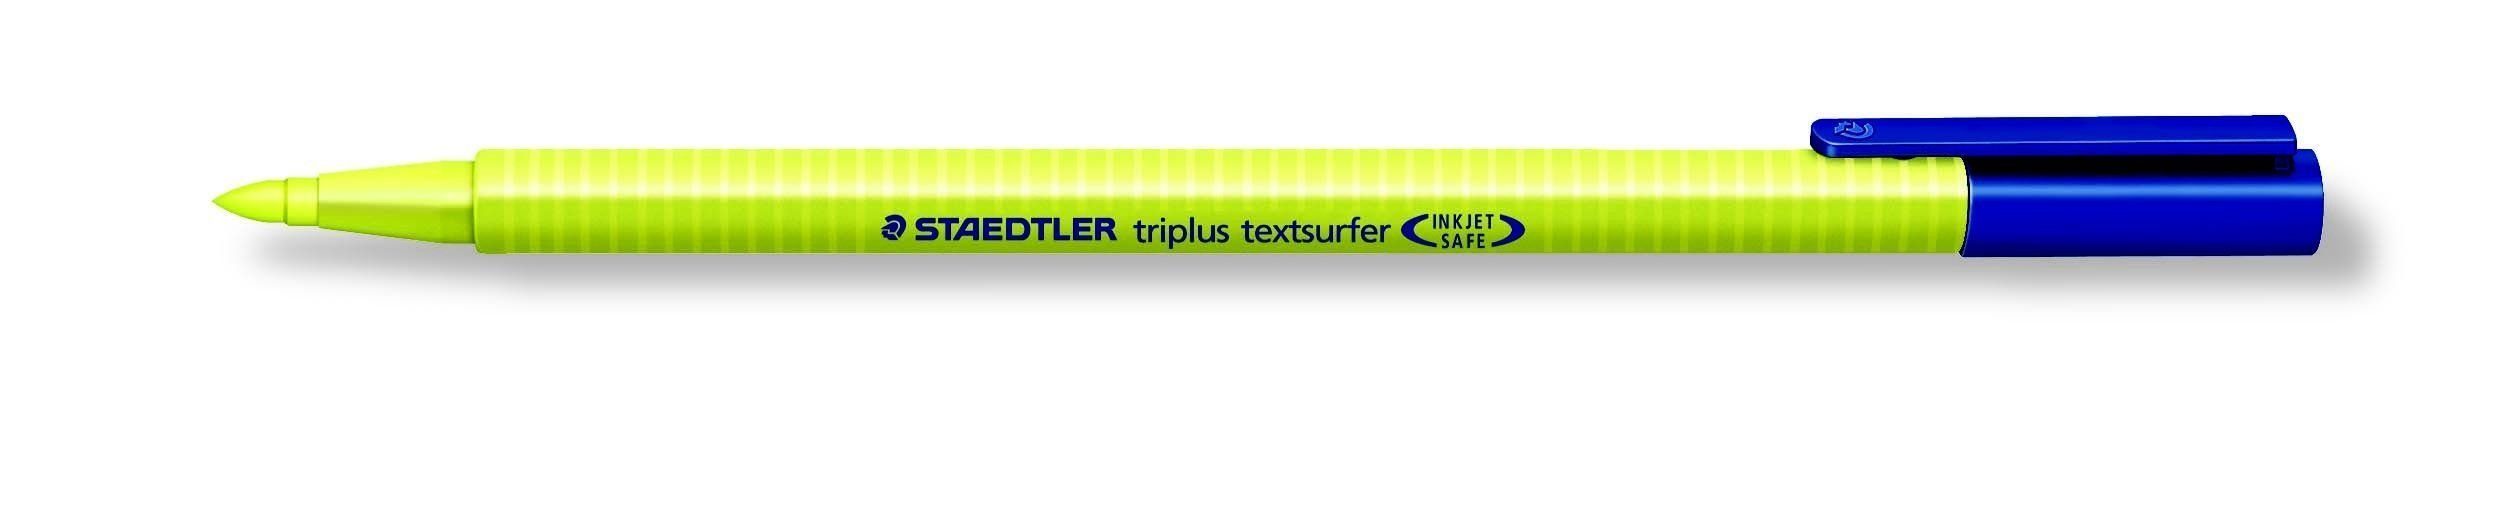 STAEDTLER Kugelschreiber Textmarker textsurfer triplus gelb STAEDTLER